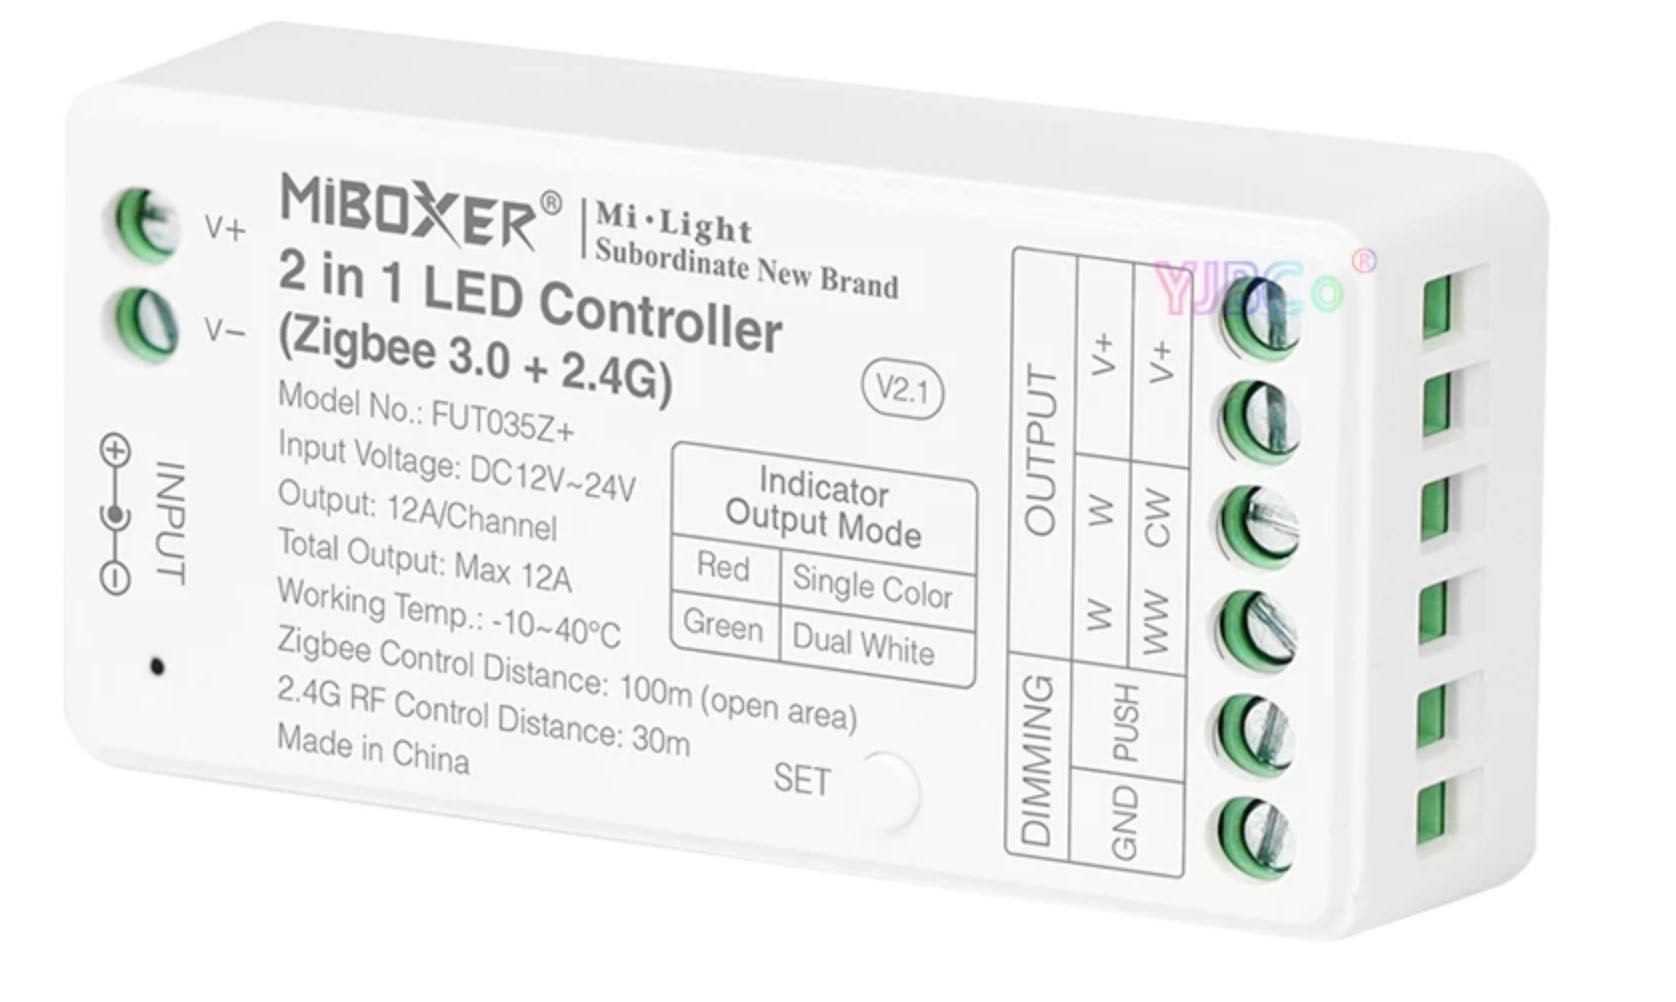 Controller LED Miboxer Zigbee 3.0, WiFi, 2.4G - FUT035S+